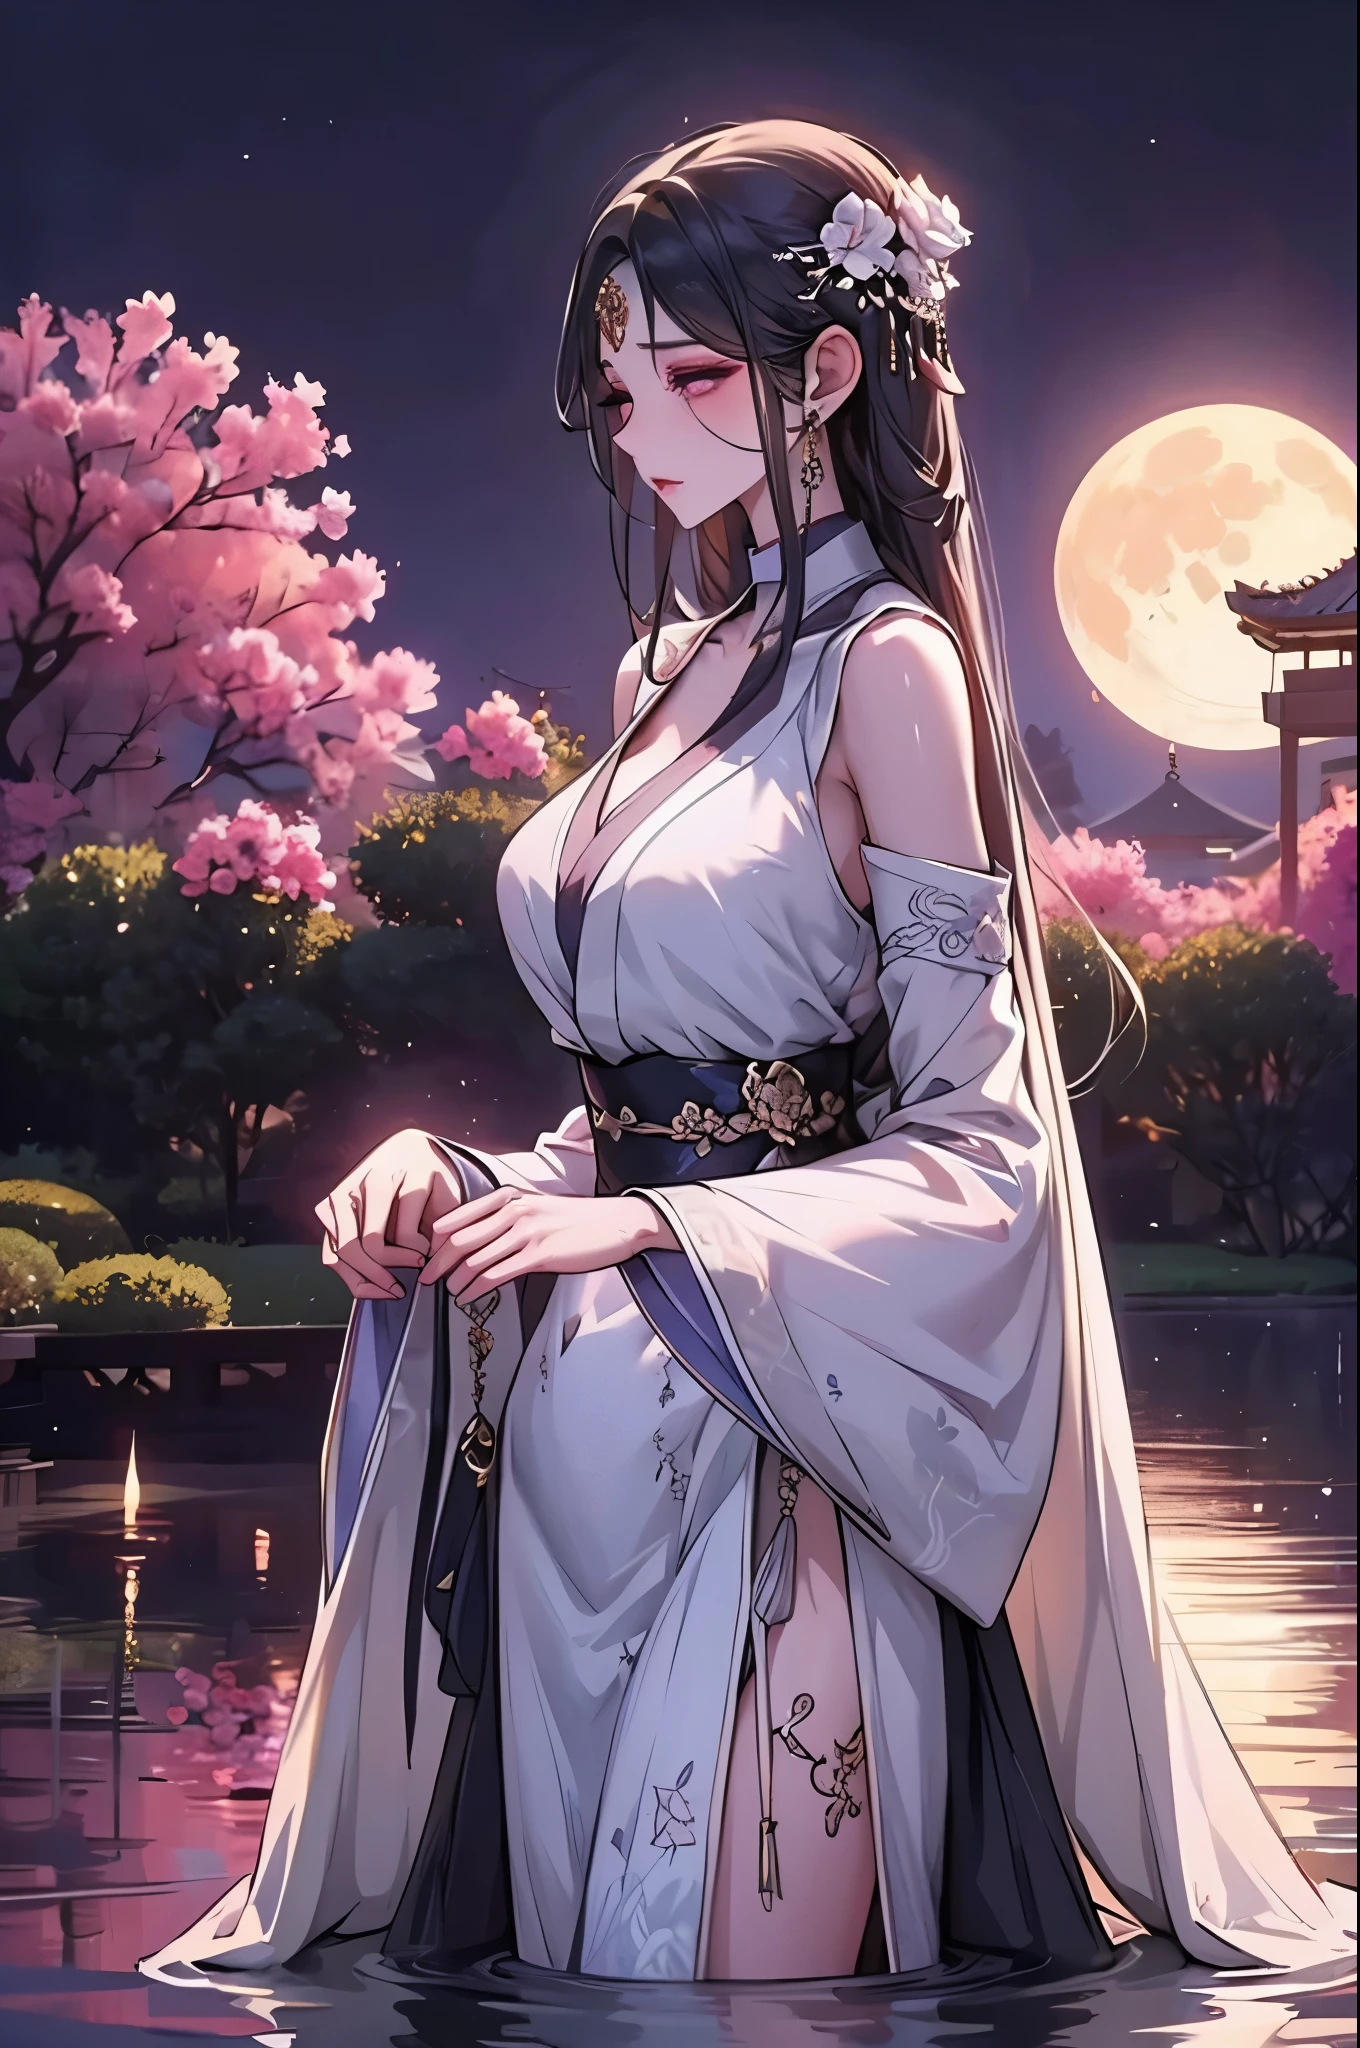 La emperatriz Jiuyou es una figura impresionante y majestuosa con largas, cabello negro suelto que brilla con un brillo místico. Sus profundos ojos violetas están llenos de sabiduría y un toque de tristeza.. Su impecable, La piel pálida le da una apariencia casi etérea..

Ella está vestida con un elegante, modesto hanfu, con mangas anchas, un cuello alto, y capas de delicado, telas de colores pastel adornadas con patrones intrincados y piedras preciosas brillantes. El Hanfu debería cubrirla completamente mientras acentúa su esbelta figura., Figura regia,Prepara el escenario en un hermoso jardín imperial bajo la luz de la luna.. El jardín está lleno de flores en flor, árboles antiguos, y un estanque tranquilo con nenúfares. Caminos de piedra serpentean a través de la exuberante vegetación., que conduce a un pabellón tradicional con tallas de madera ornamentadas. La luna arroja un suave, luz plateada sobre el jardín, creando un ambiente sereno y encantador.

La emperatriz Jiuyou se encuentra elegantemente cerca del pabellón., su elegante Hanfu fluyendo suavemente en la brisa nocturna. La escena general debe irradiar una sensación de paz y belleza natural., destacando su presencia divina y real contra el pintoresco telón de fondo del jardín imperial.